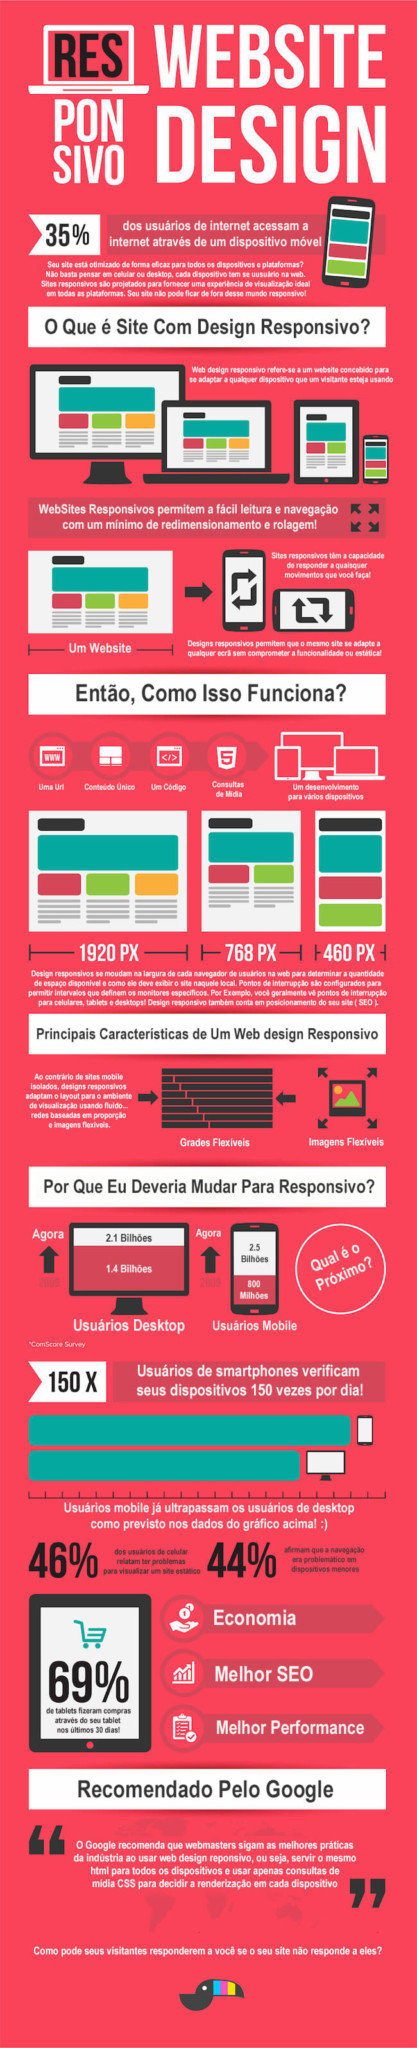 web design responsivo - site responsivo - design responsivo